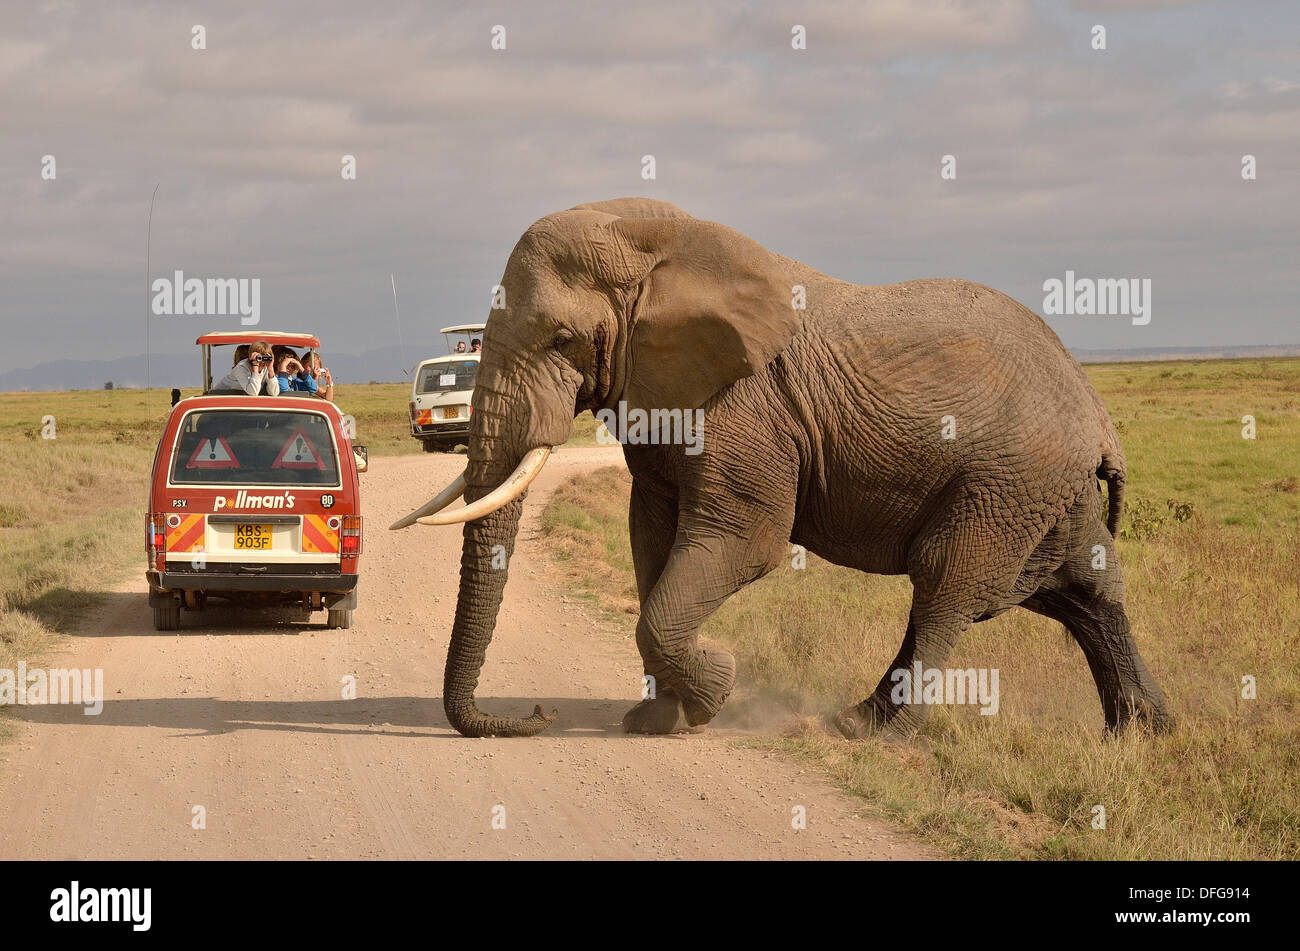 El elefante (Loxodonta africana) en la parte delantera de un vehículo de safari, el Parque Nacional de Amboseli, provincia del Valle del Rift, Kenia Foto de stock